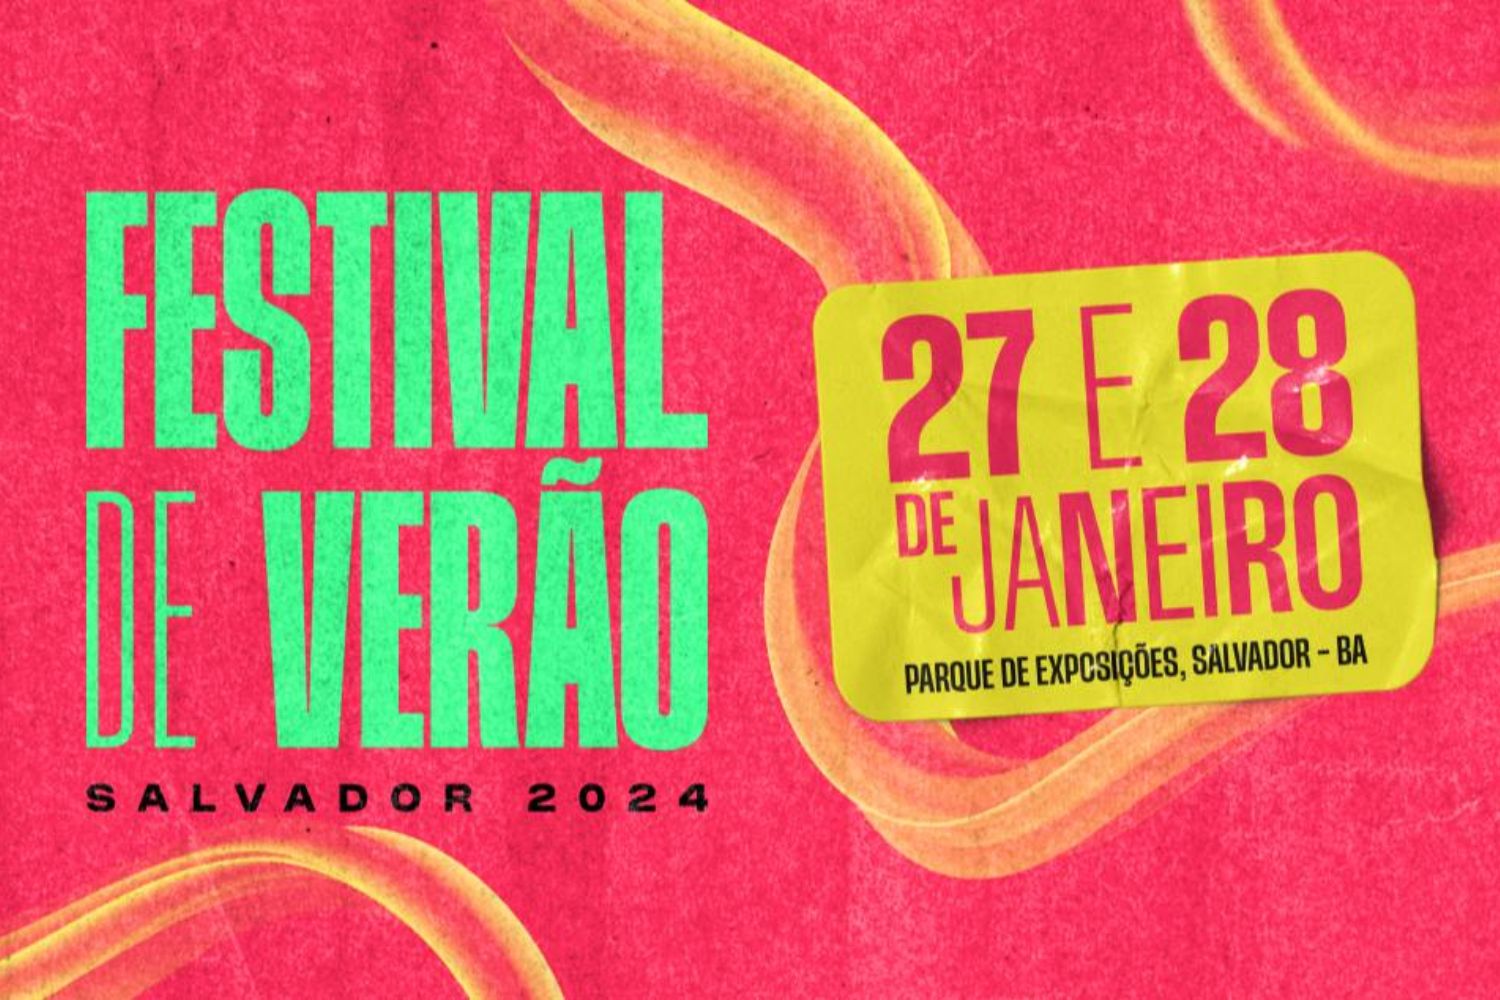 Salvador Fest - 2024